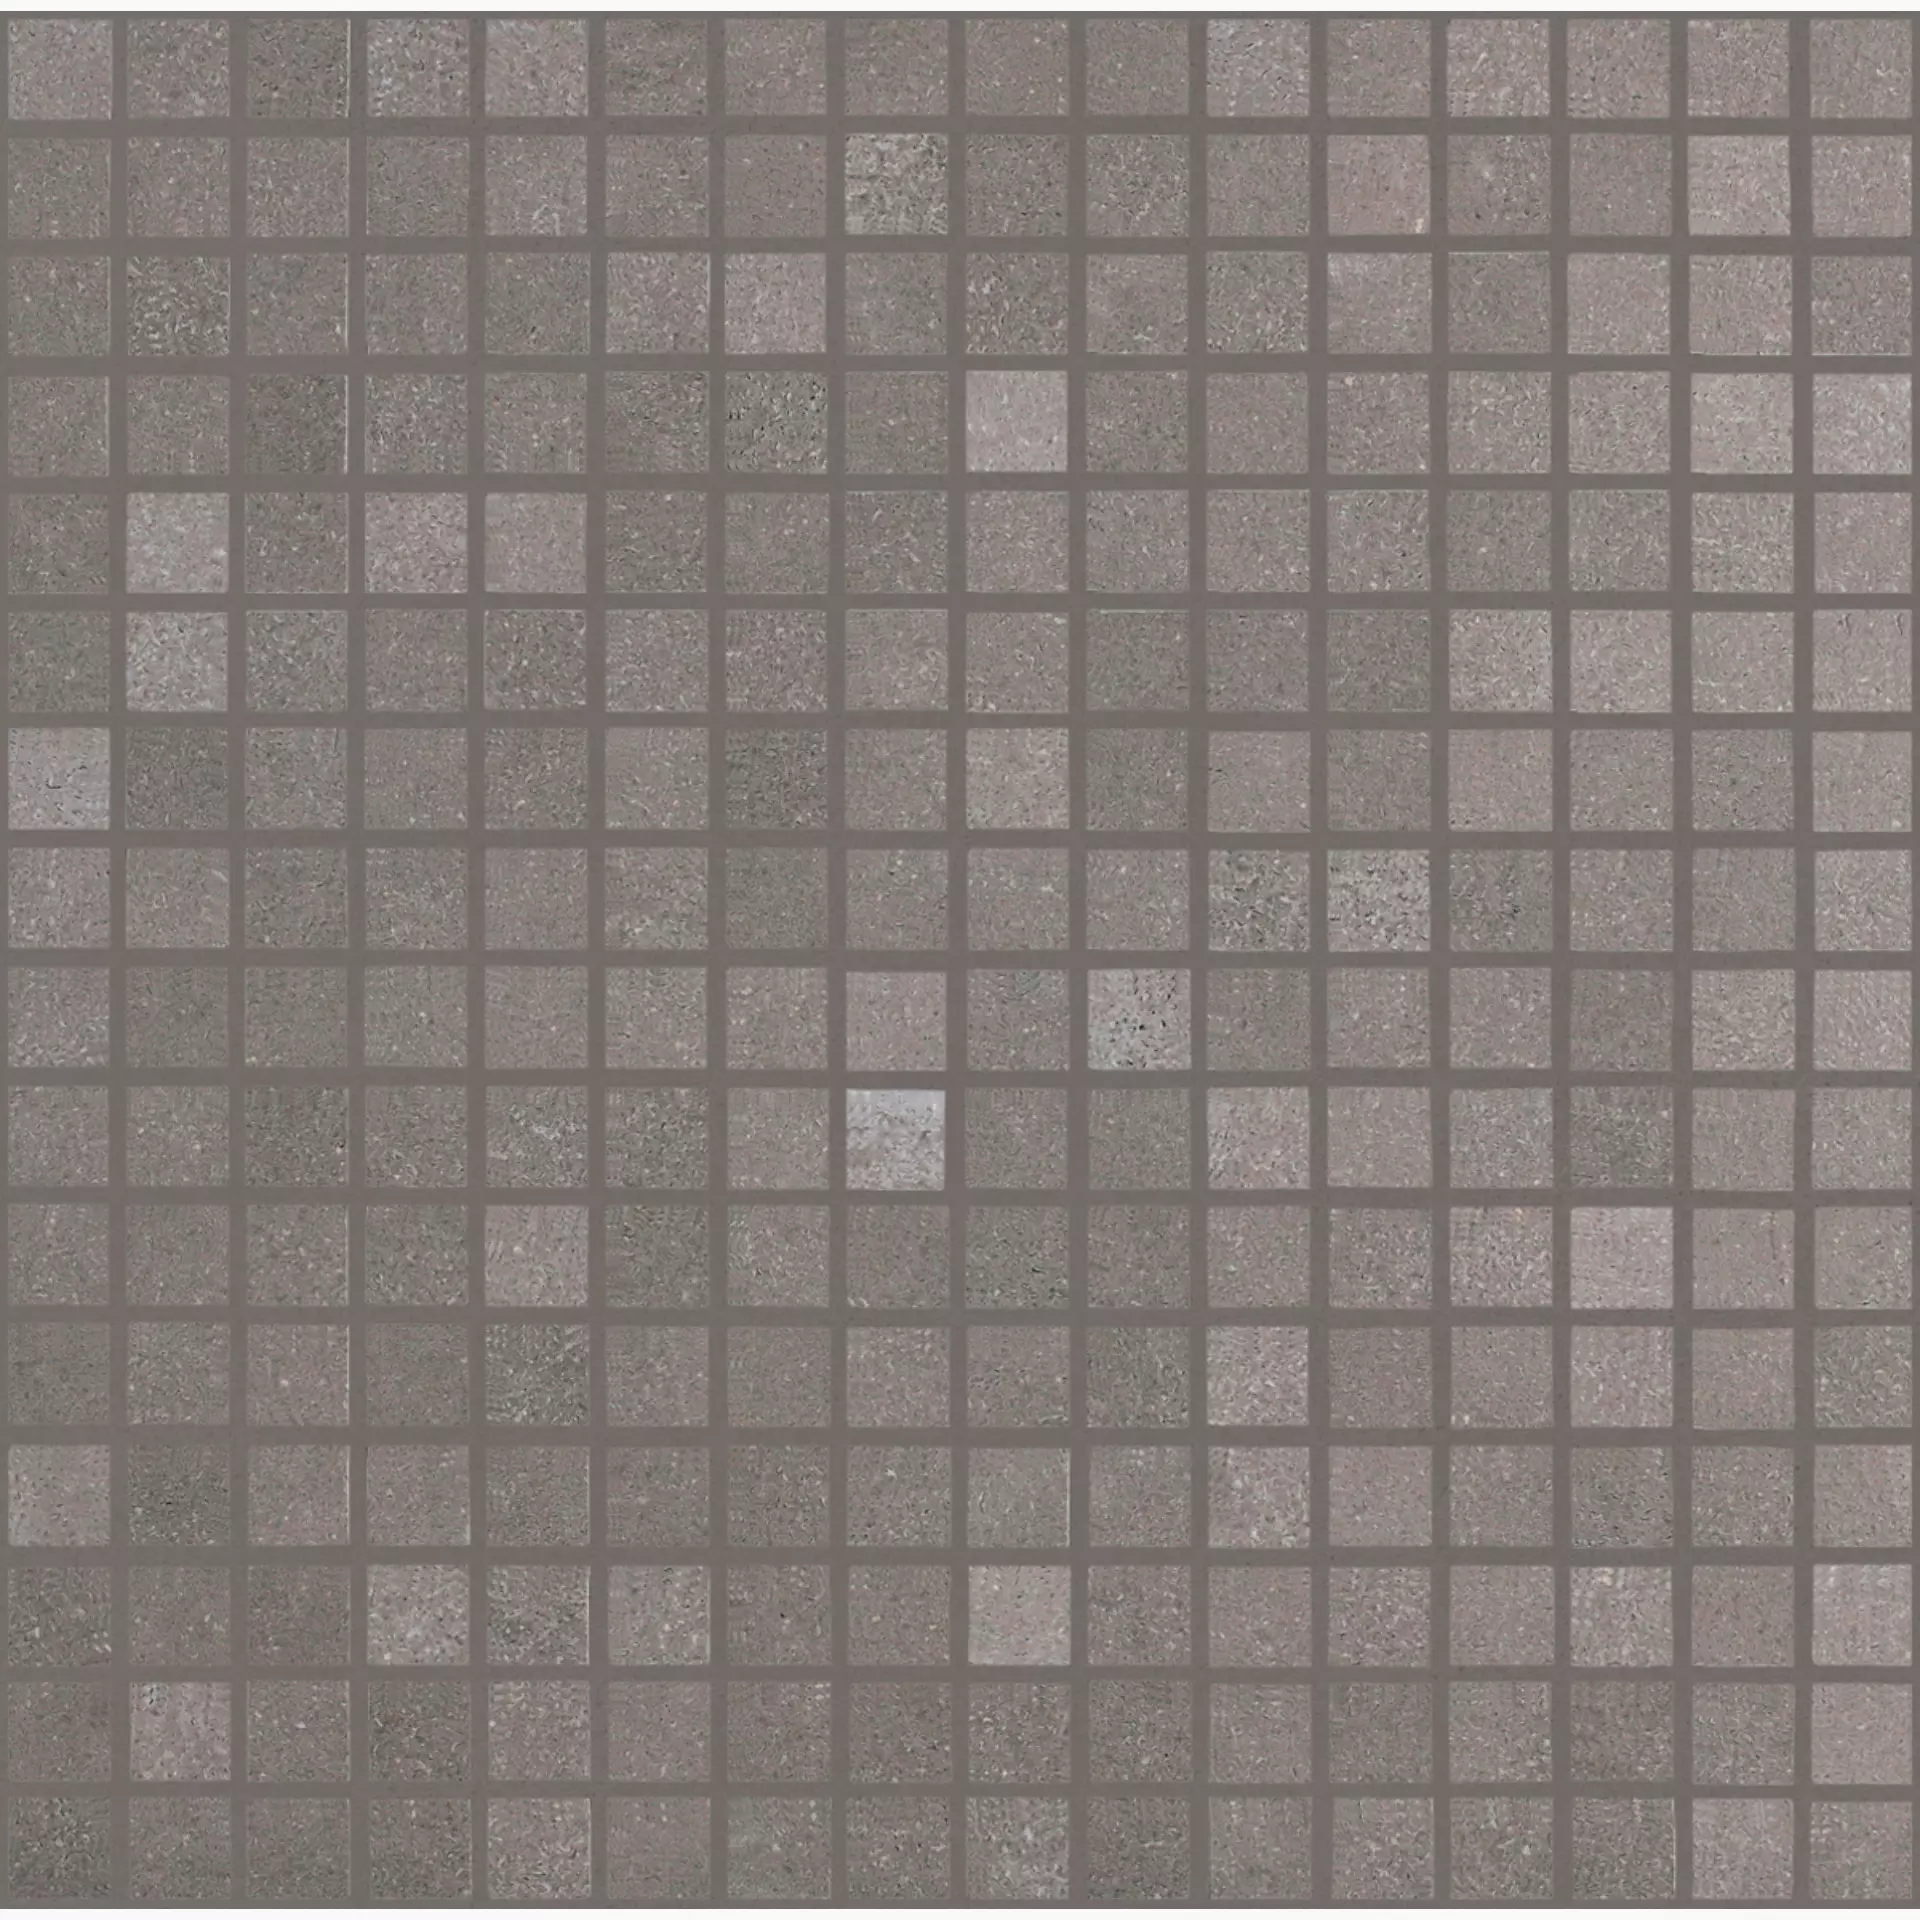 Bodenfliese,Wandfliese Marazzi Material Dark Grey Naturale – Matt Dark Grey M0LT matt natur 30x30cm Mosaik 10mm